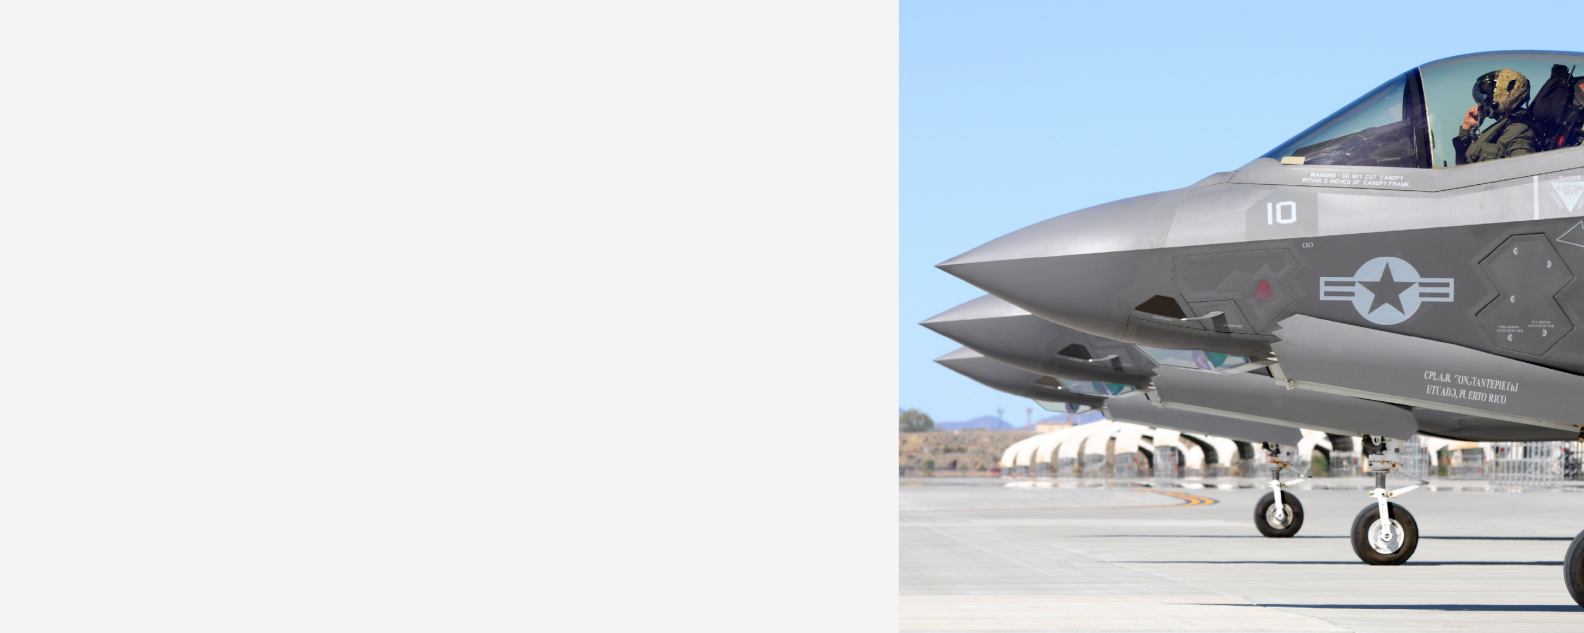 Drei F-35B Lightning II von VMFA-121 sind bereit zum Start von der Marine Corps Air Station Yuma, Arizona